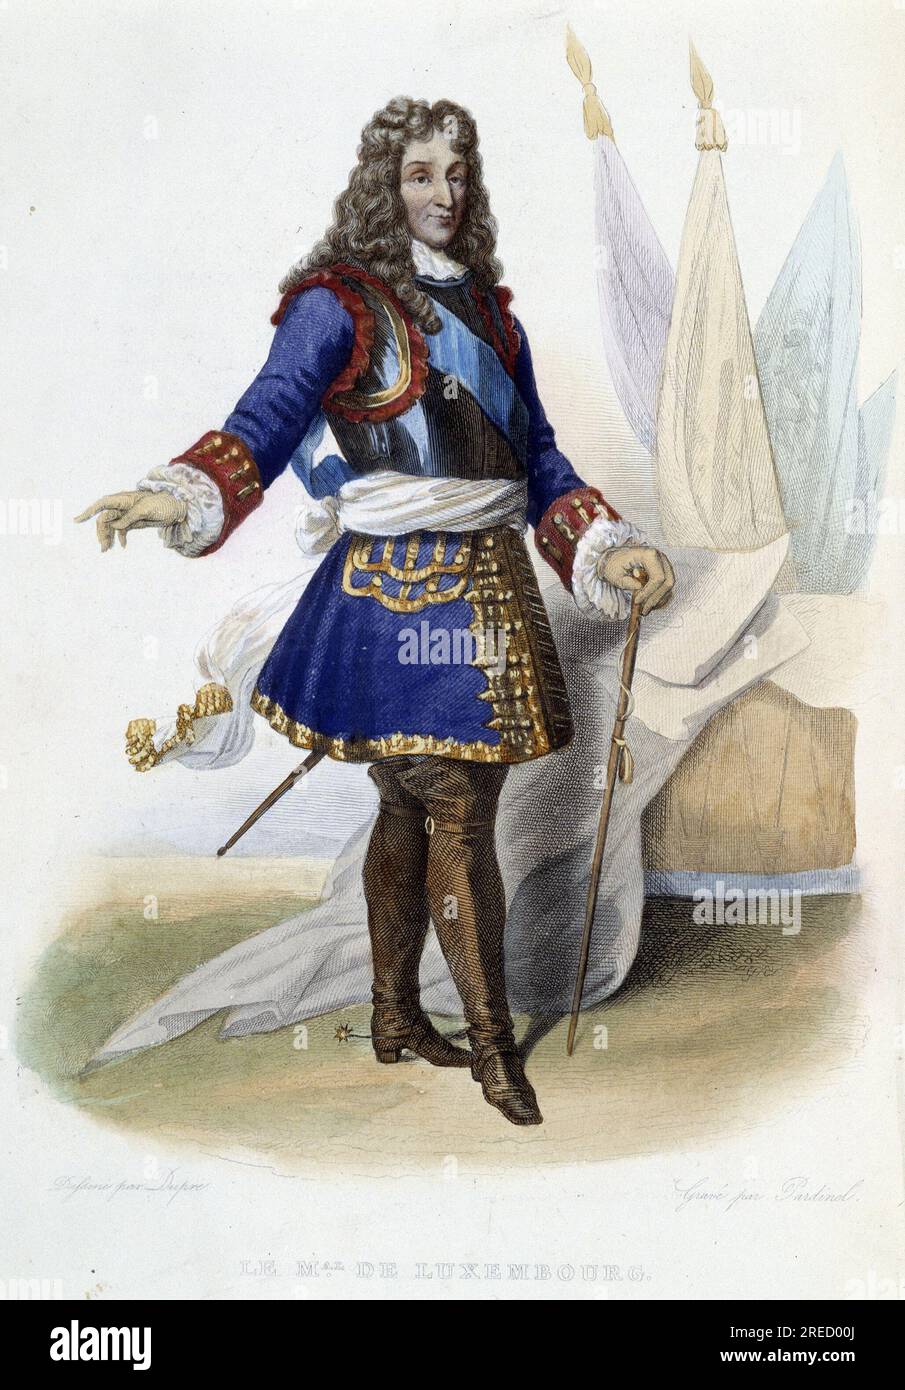 Portrait du Marechal de Luxembourg: Francois Henri de Montmorency Bouteville, duc de Luxembourg Marechal de France (1628-1695).- in Ed Mennechet, "Le Plutarque francais", 1844-1847 Stockfoto